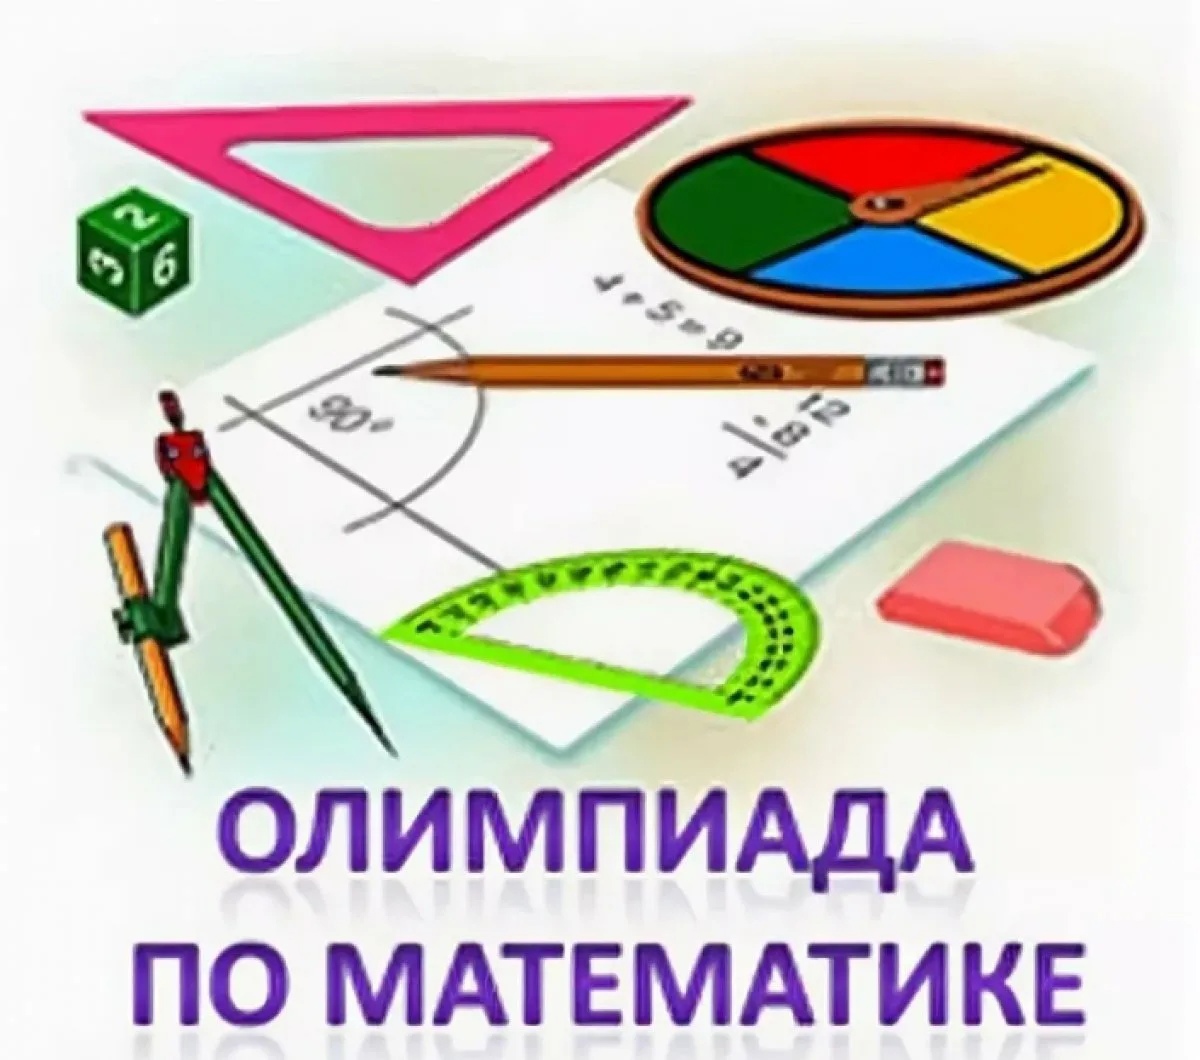 Открытая олимпиада по математике для обучающихся 7-х классов!!!.